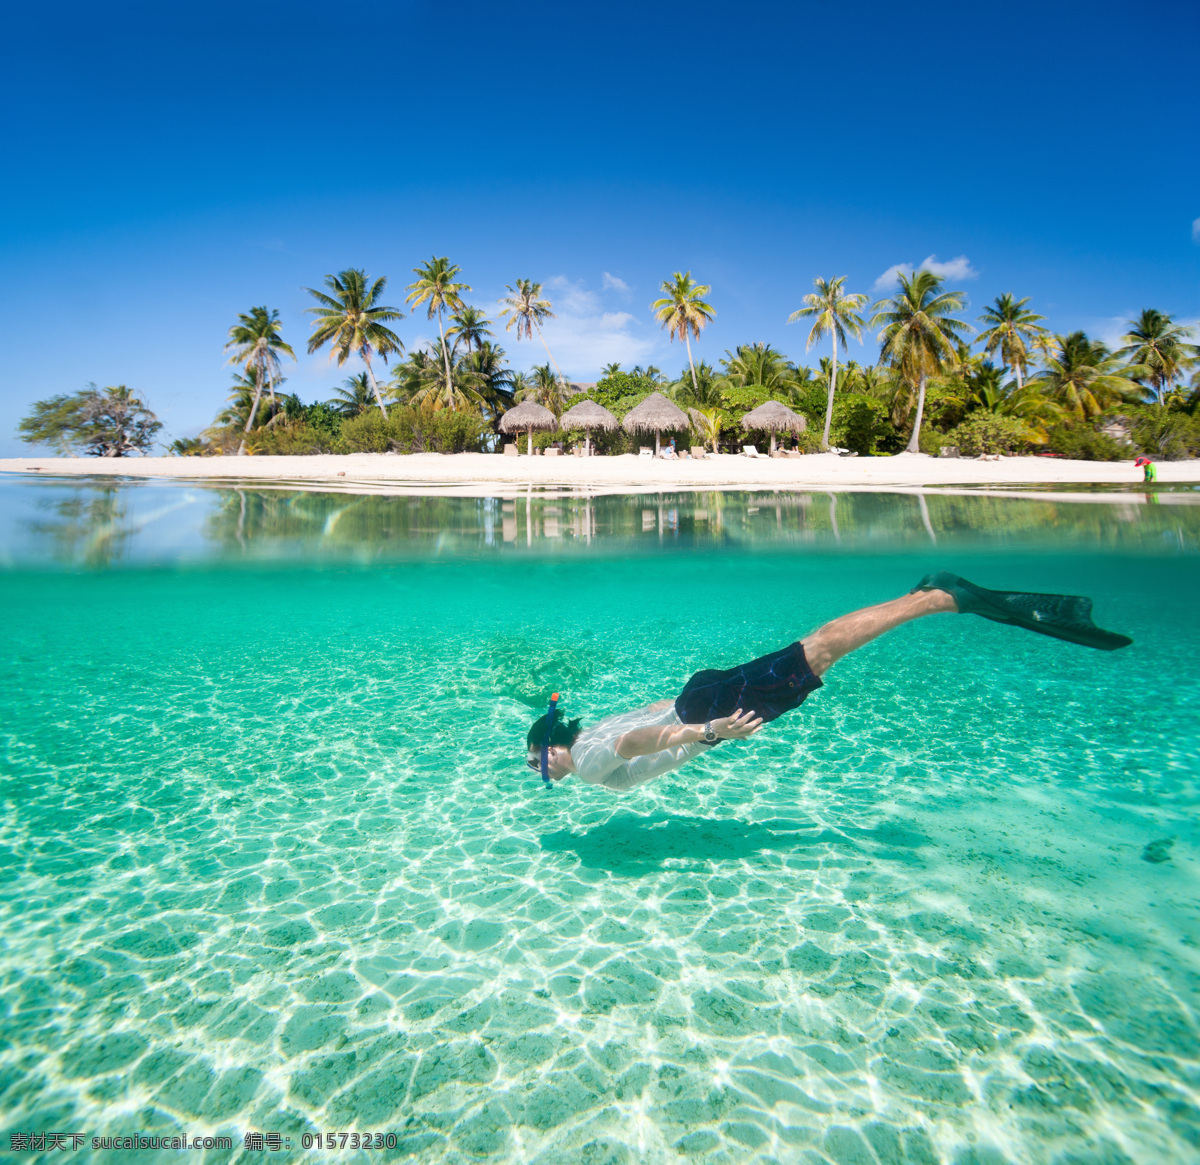 潜水 人 椰树 风景 大海风景 美丽海景 自然美景 景色 潜水运动员 蓝天 自然风景 自然景观 青色 天蓝色